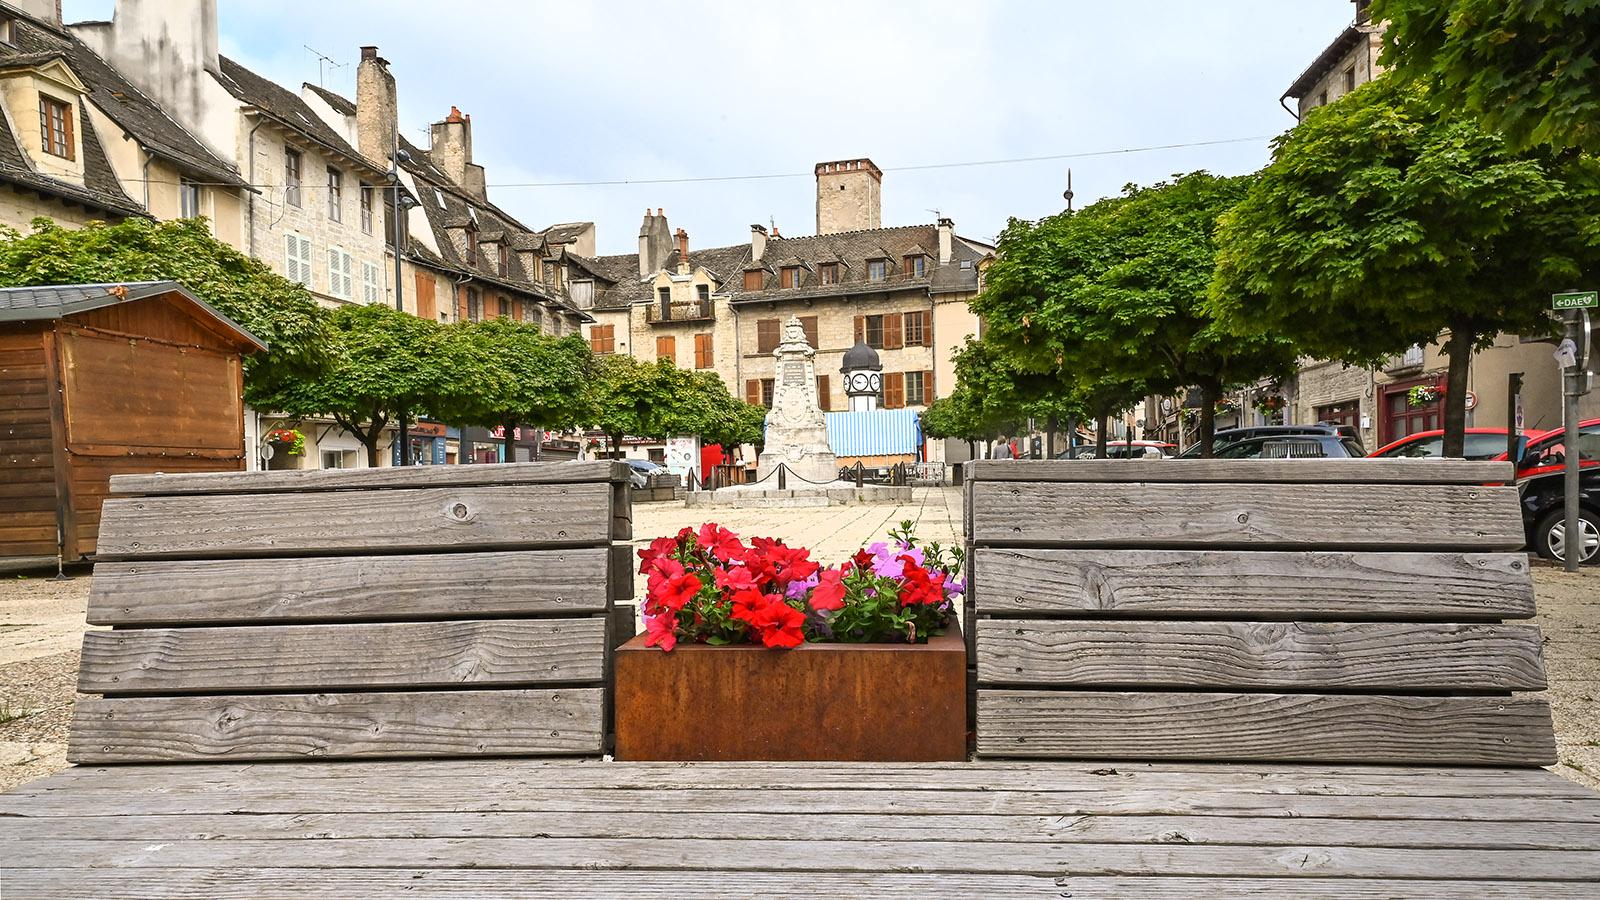 Hingucker auf der Place Henri Cordesse: die Sitzbänke aus Holz mit ihren blühenden Geranien. Foto: Hilke Maunder